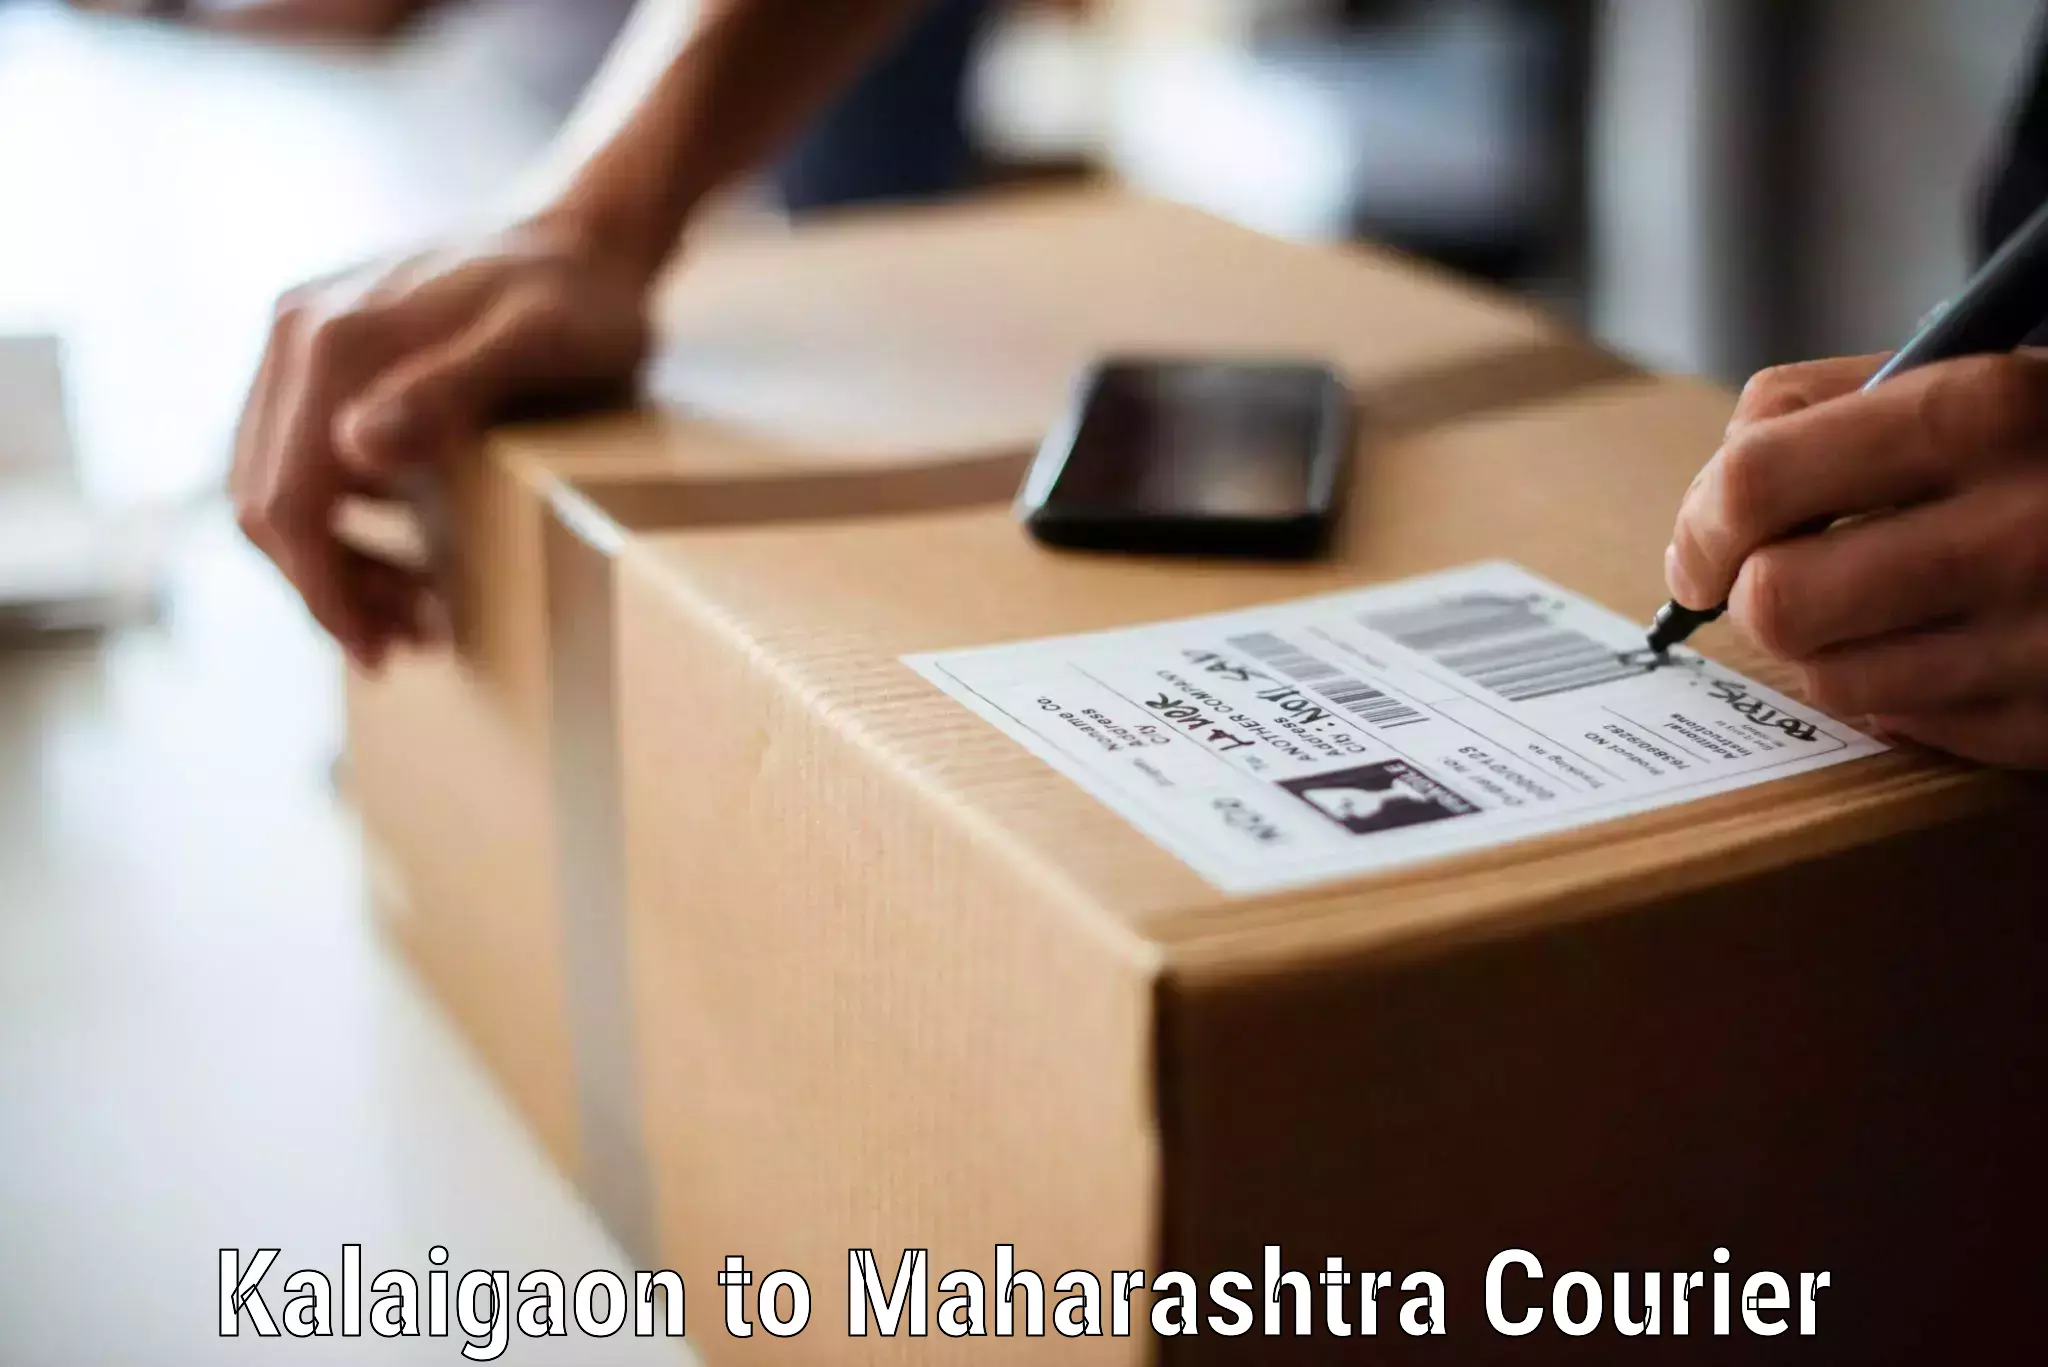 Efficient furniture shifting in Kalaigaon to Maharashtra